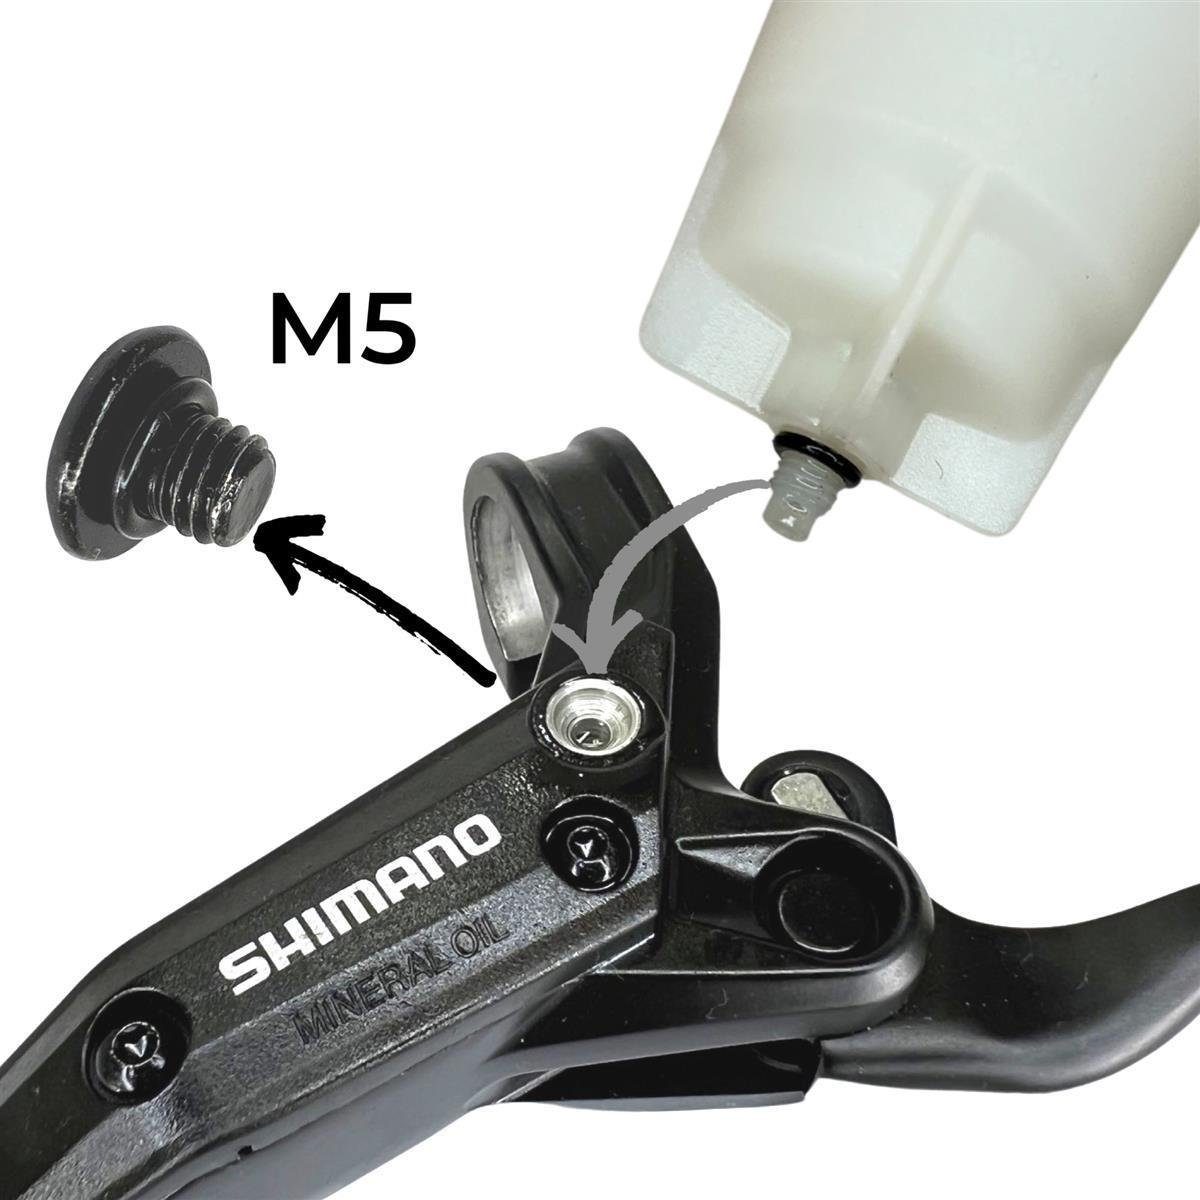 Entlüftung Shimano Befüllbecher Fahrrad-Montageständer Scheibenbremsen-Service Shimano Xtr Xt